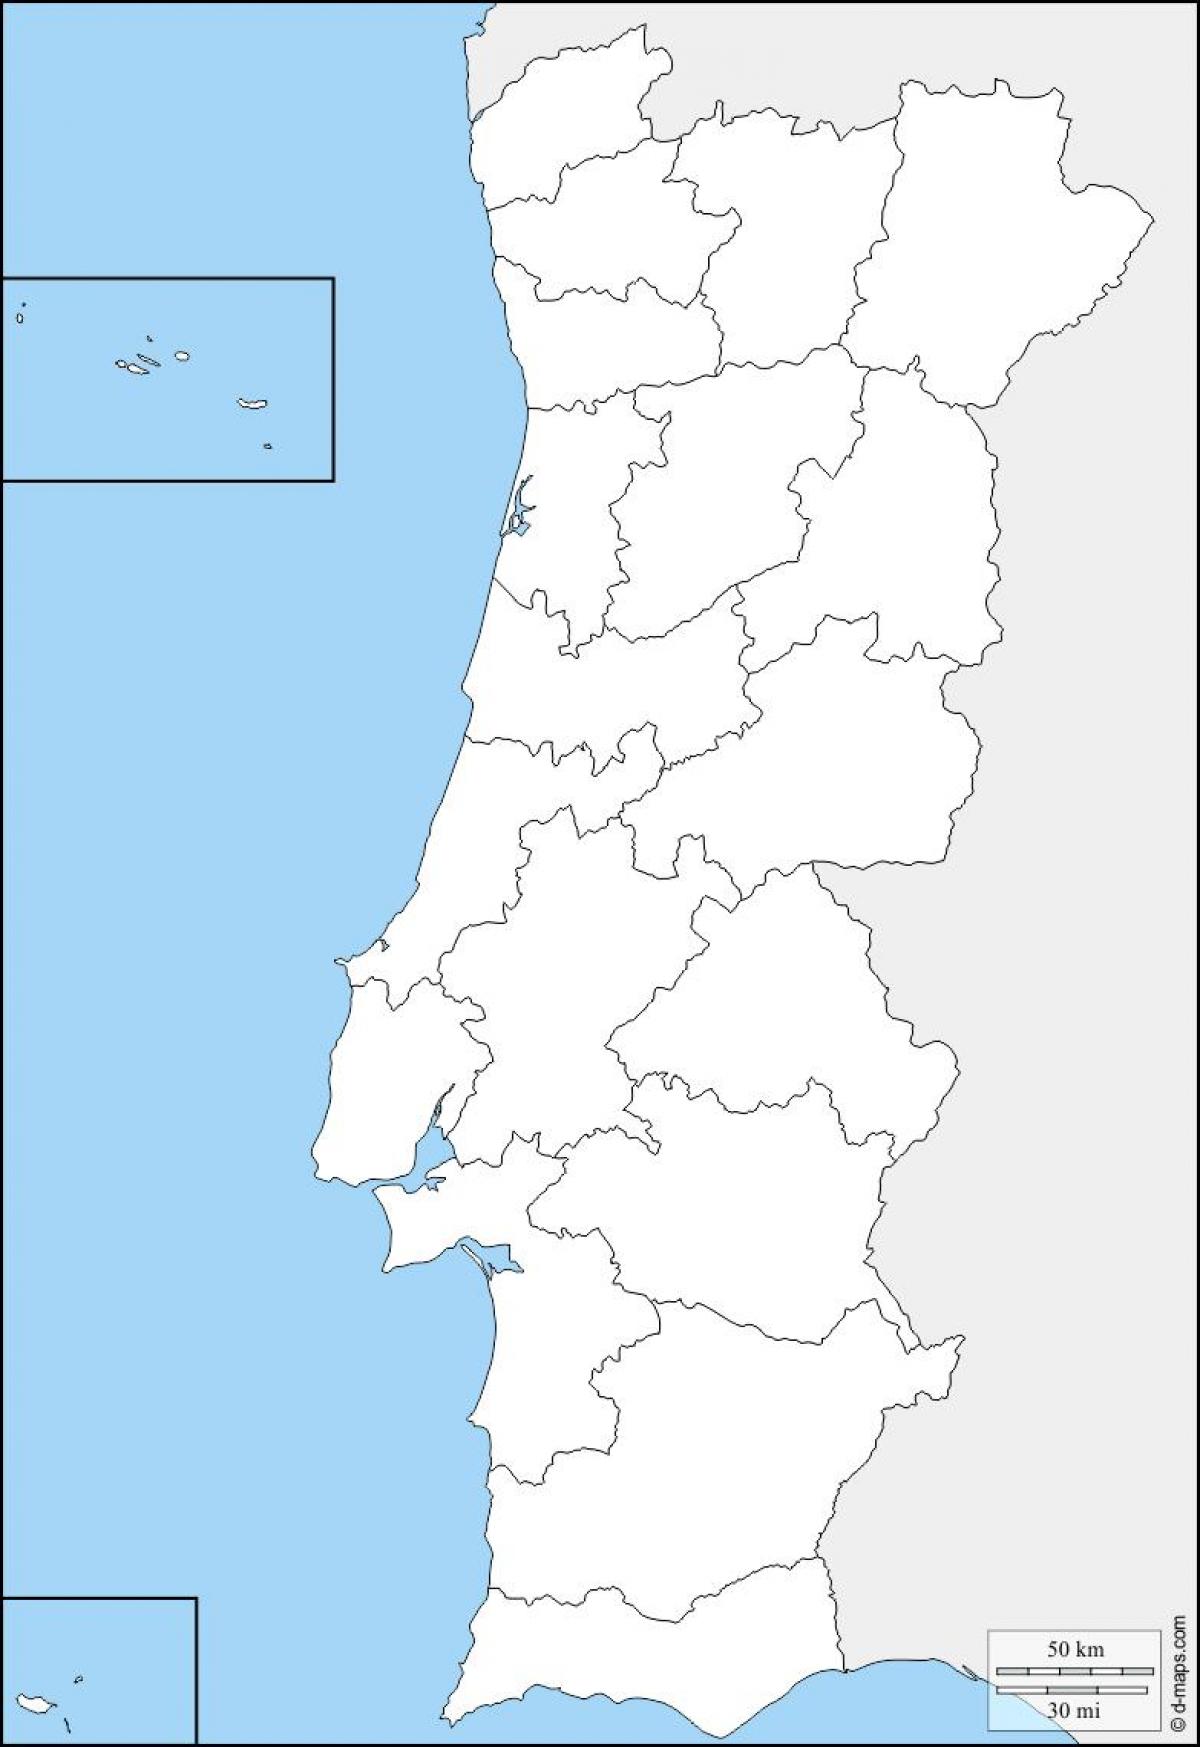 Mapa de Portugal vacío